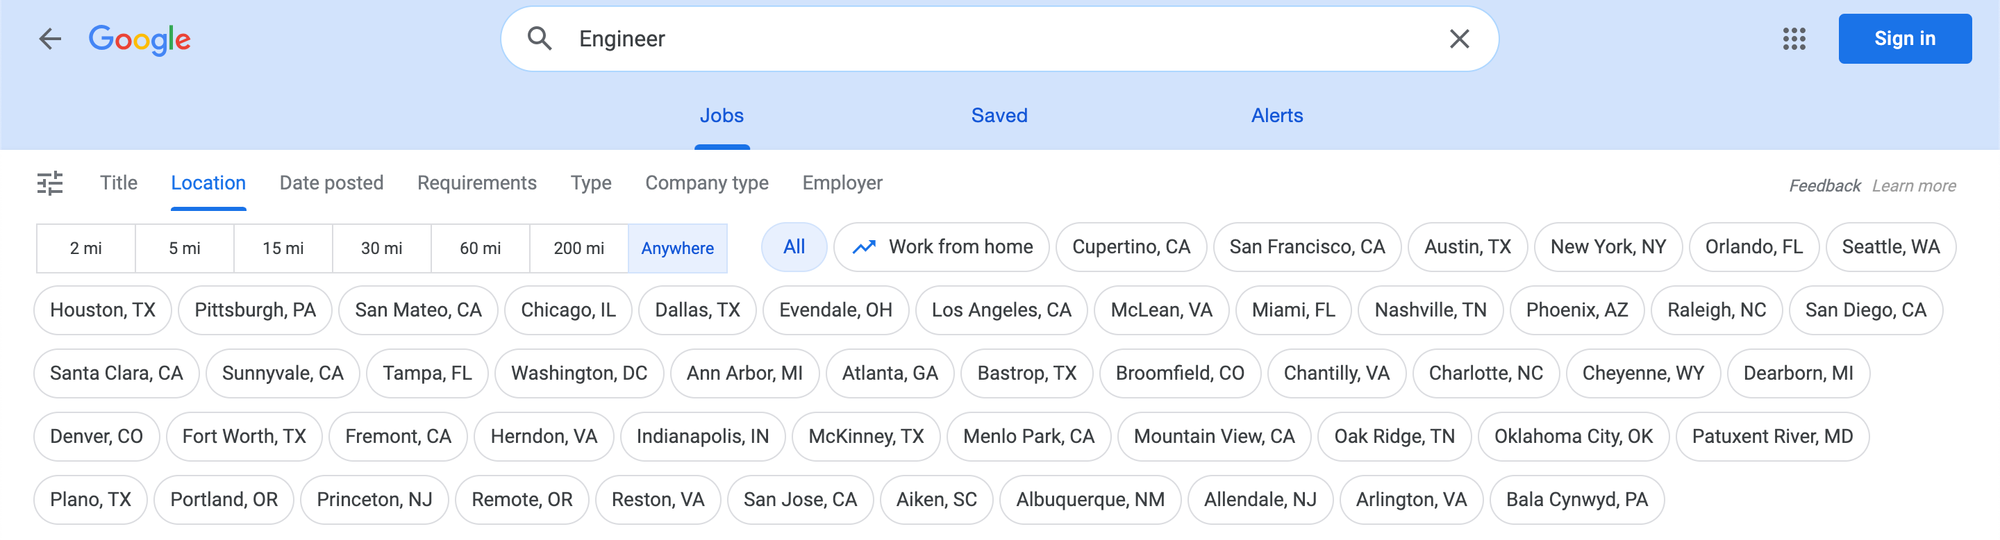 Filtering Google Jobs Results